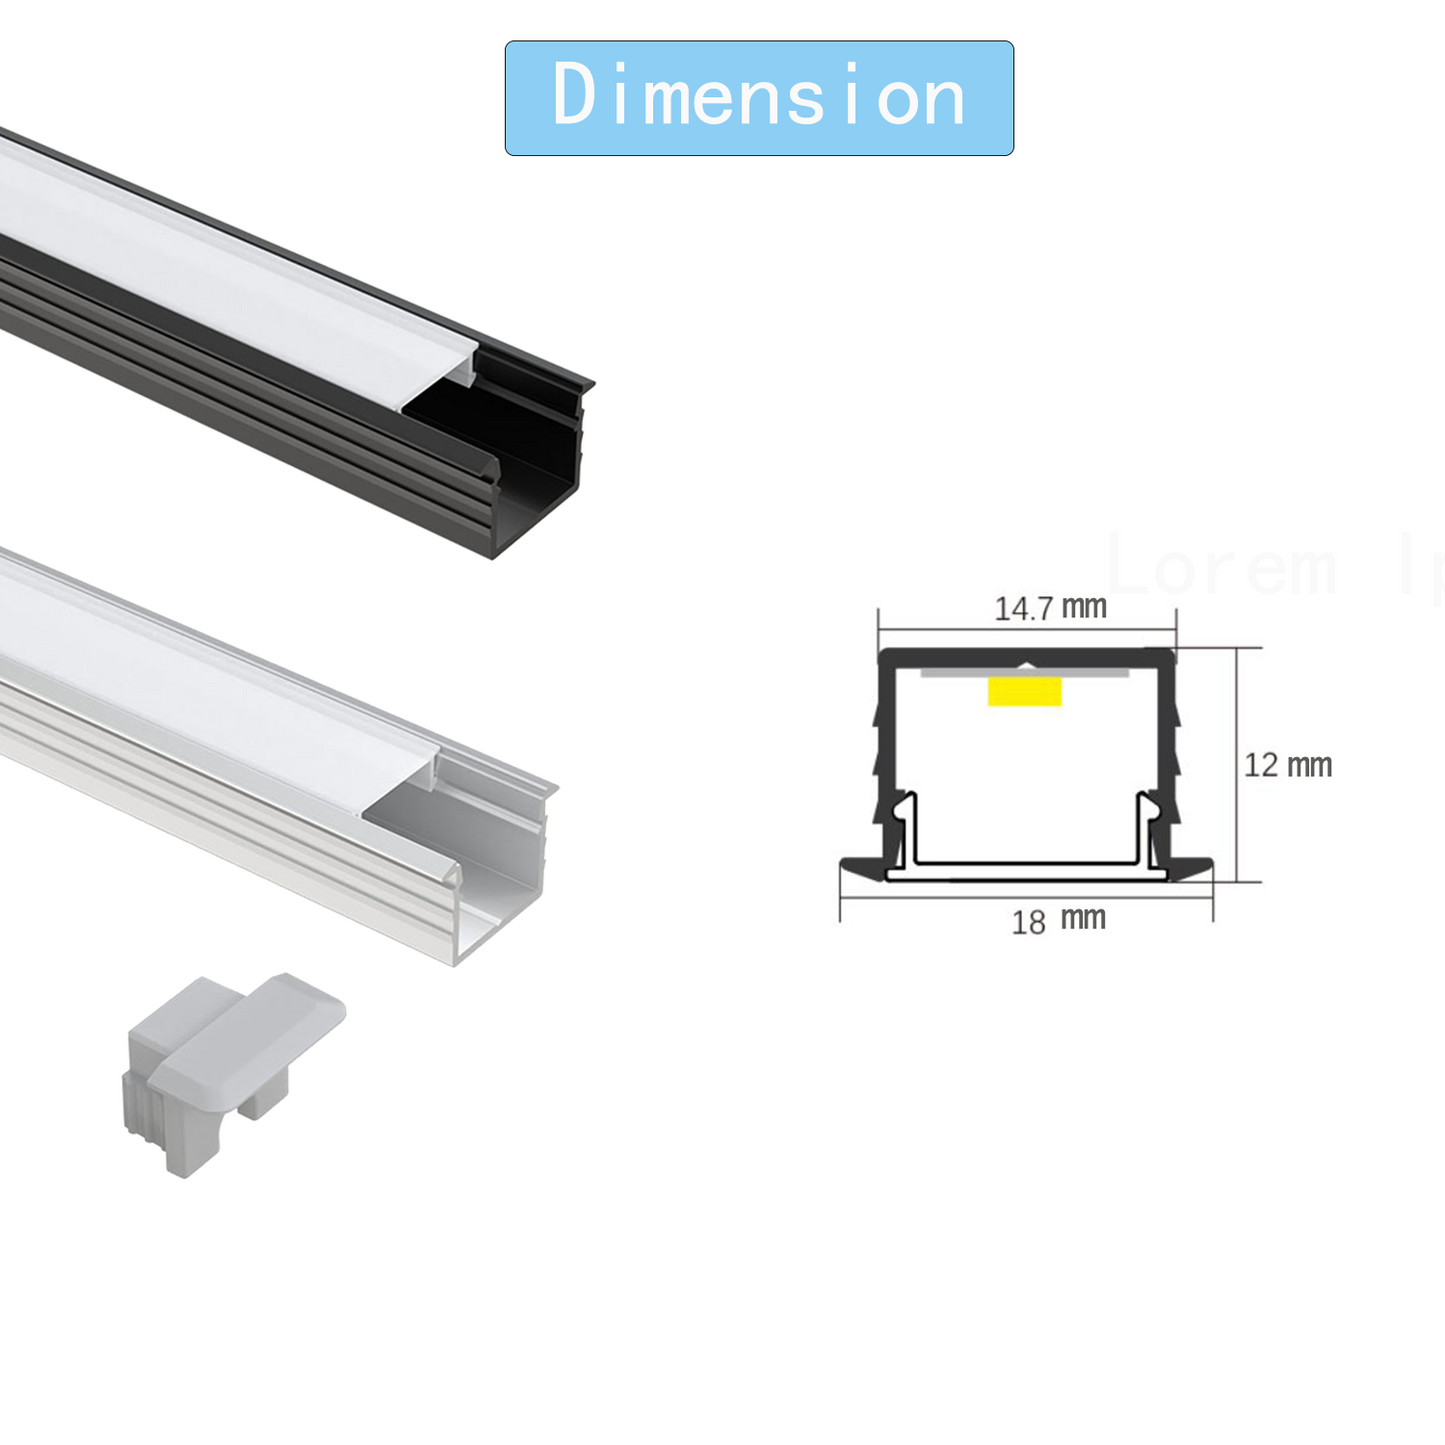 Canales de aluminio LED AP45 AL6063 Canal de montaje de luz de cinta LED empotrado con cubierta y tapa final para instalación de tira de luz 18 * 12 mm